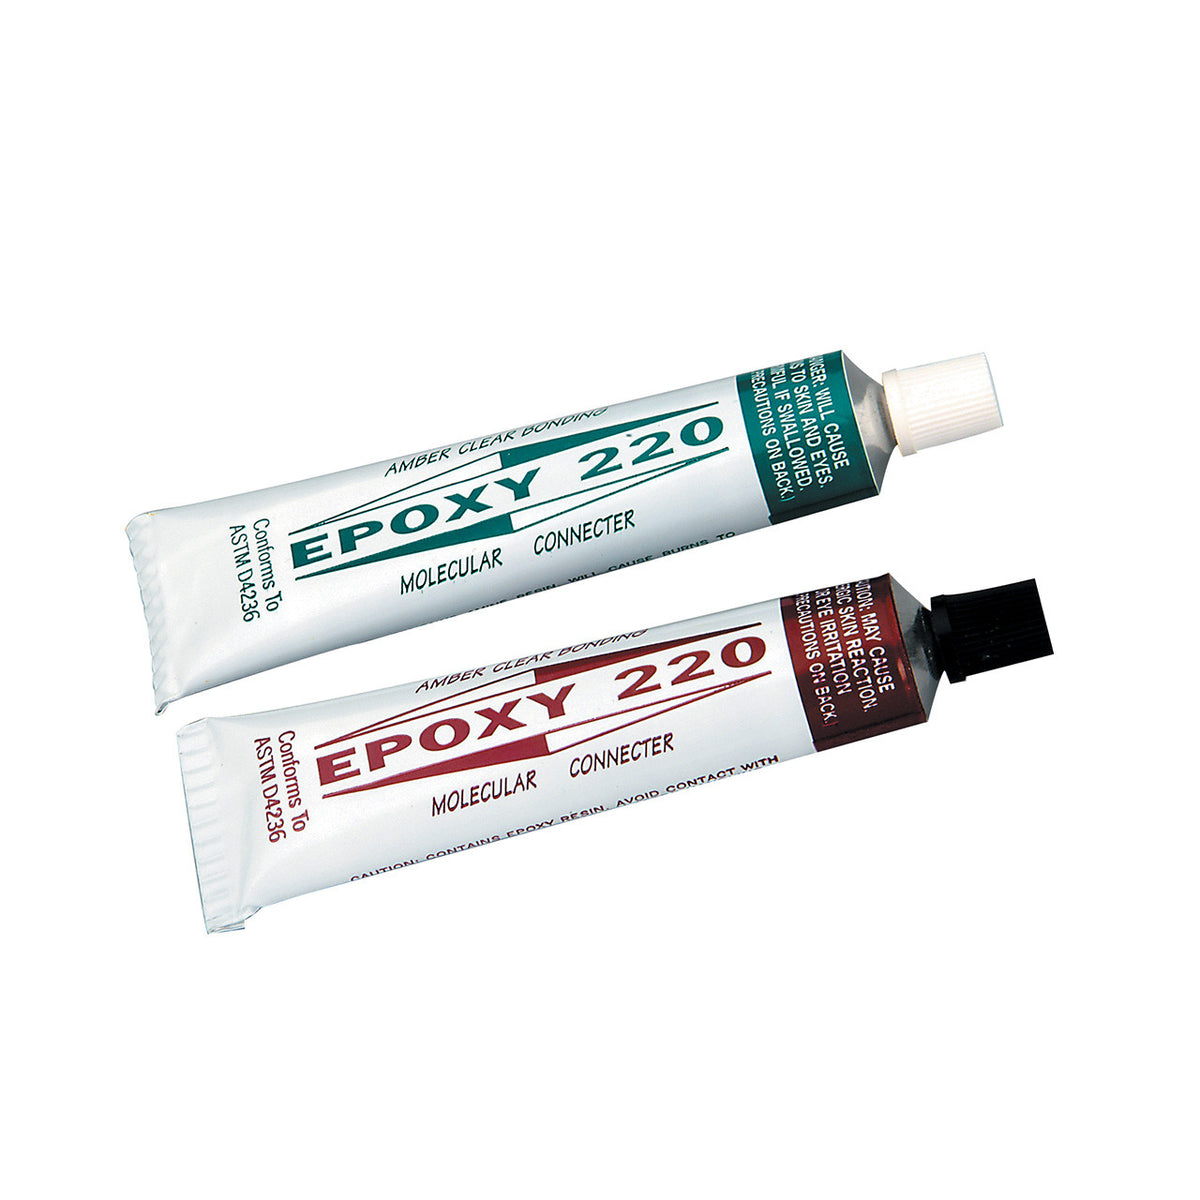 Glue - Epoxy 330